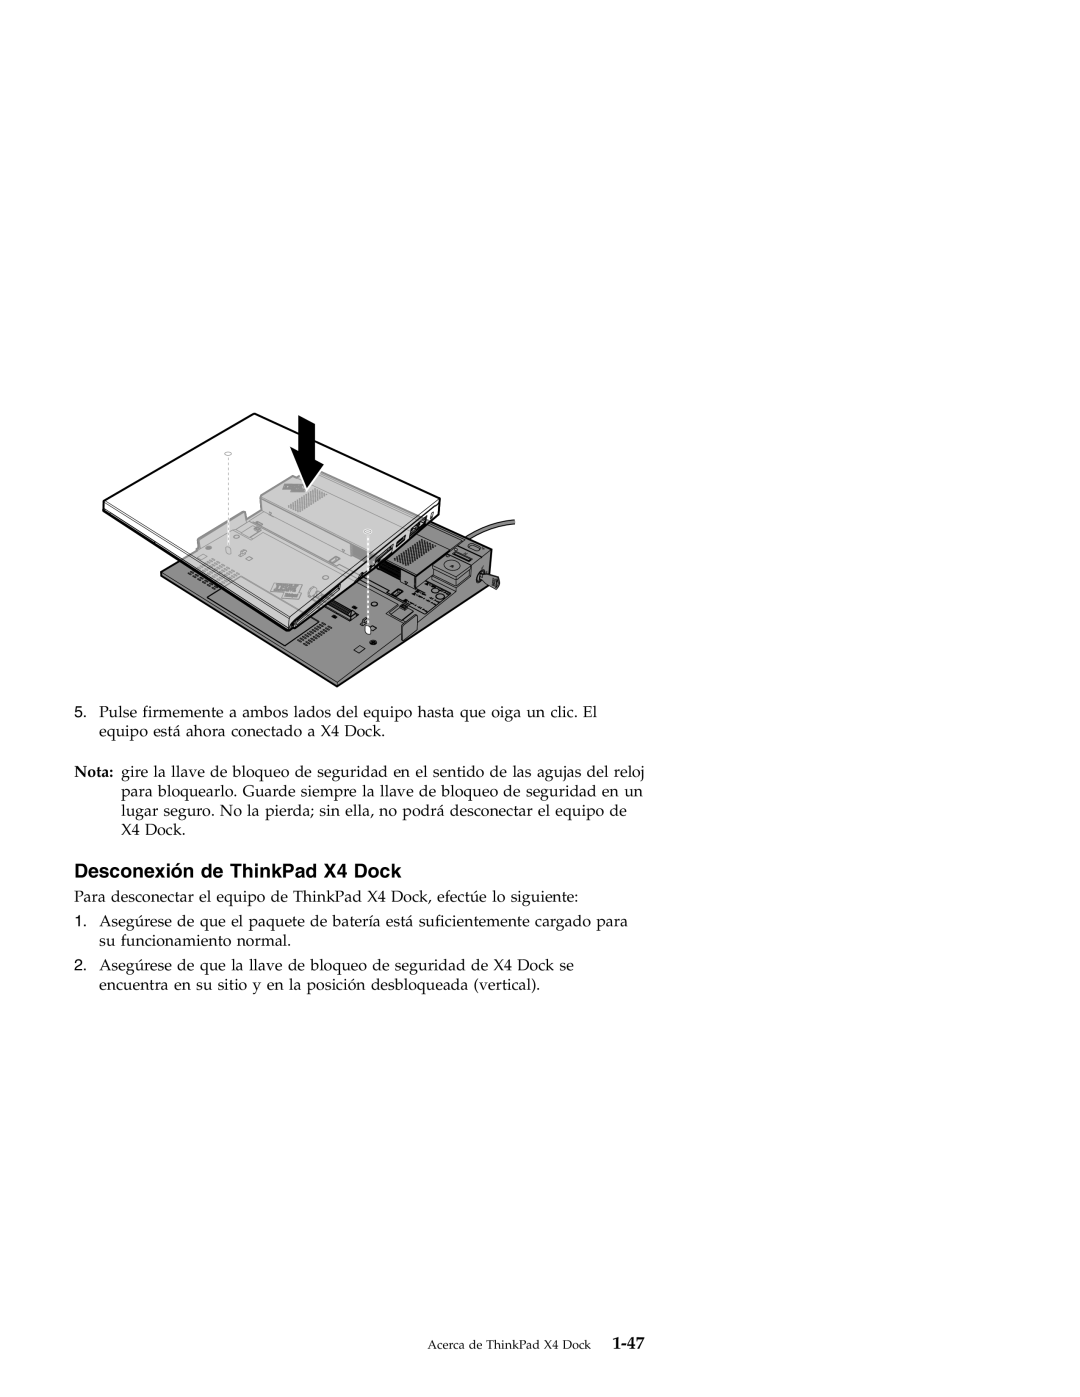 IBM manual Desconexión de ThinkPad X4 Dock 